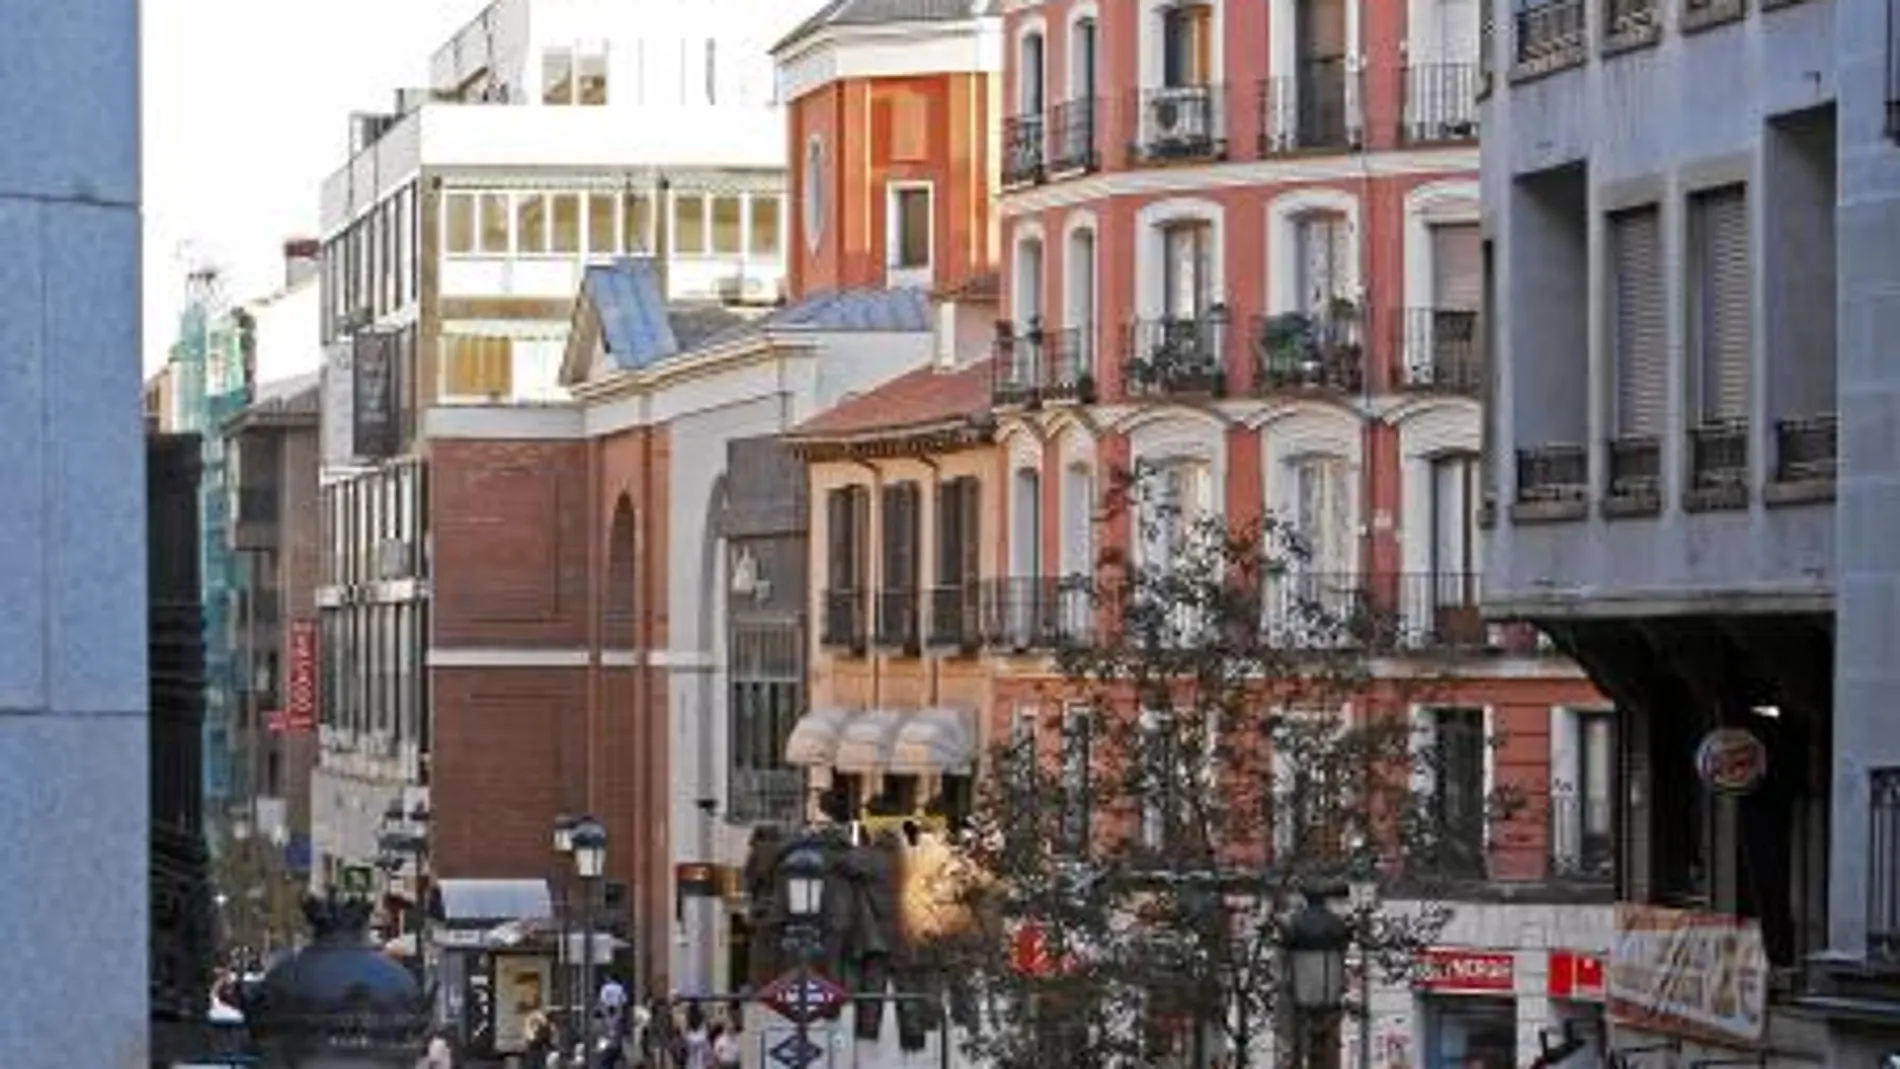 ANTÓN MARTÍN formará parte del nuevo eje Atocha- Camino Real que el alcalde de Madrid quiere revitalizar a través de un Plan Director